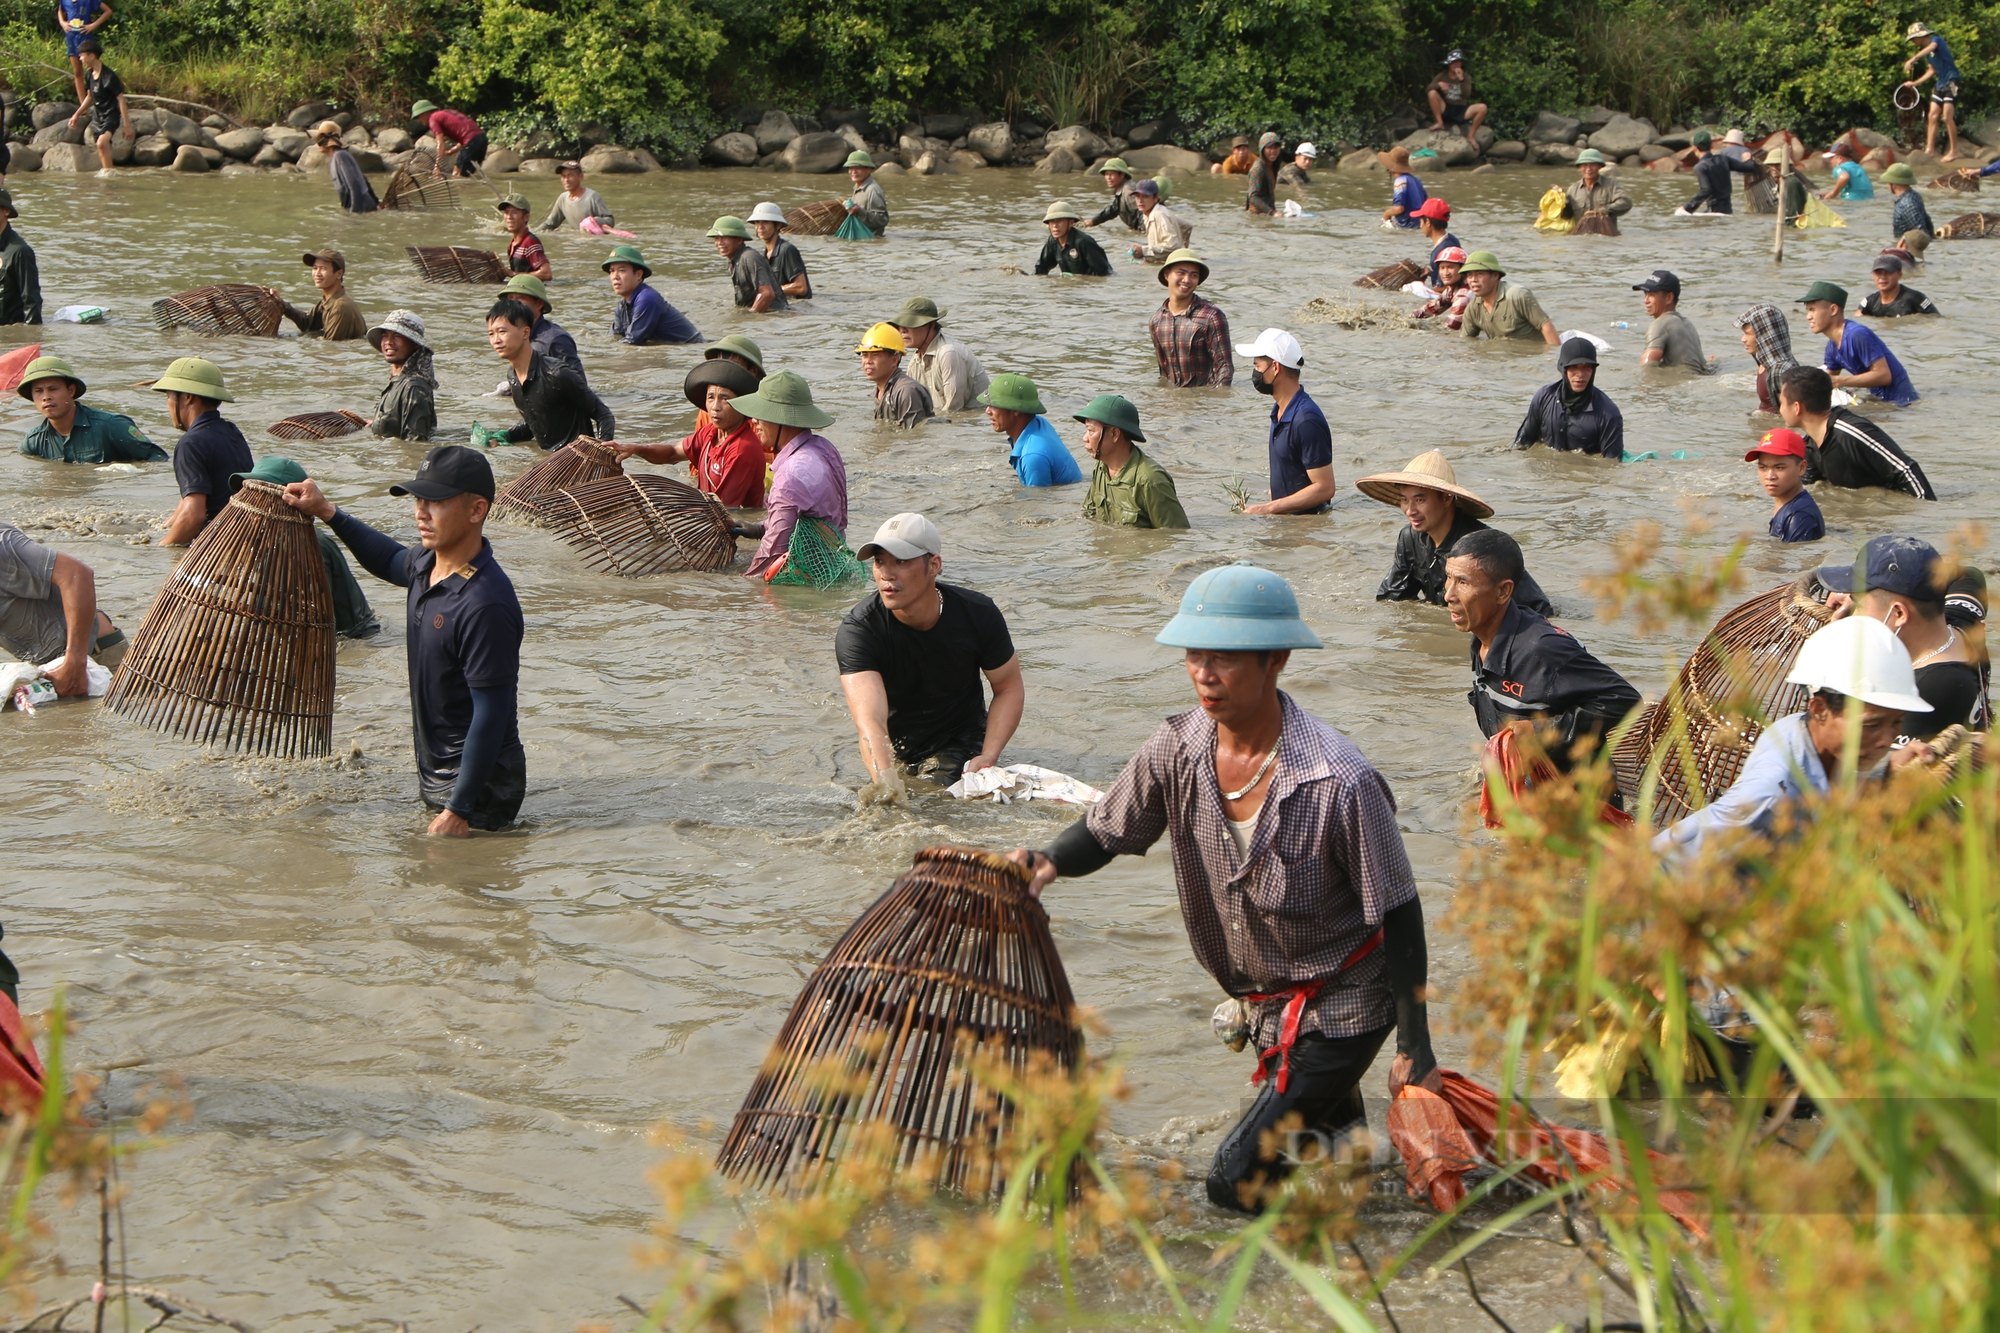 Hà Tĩnh: Hàng ngàn người lội nước, tham gia lễ hội bắt cá cầu may - Ảnh 7.